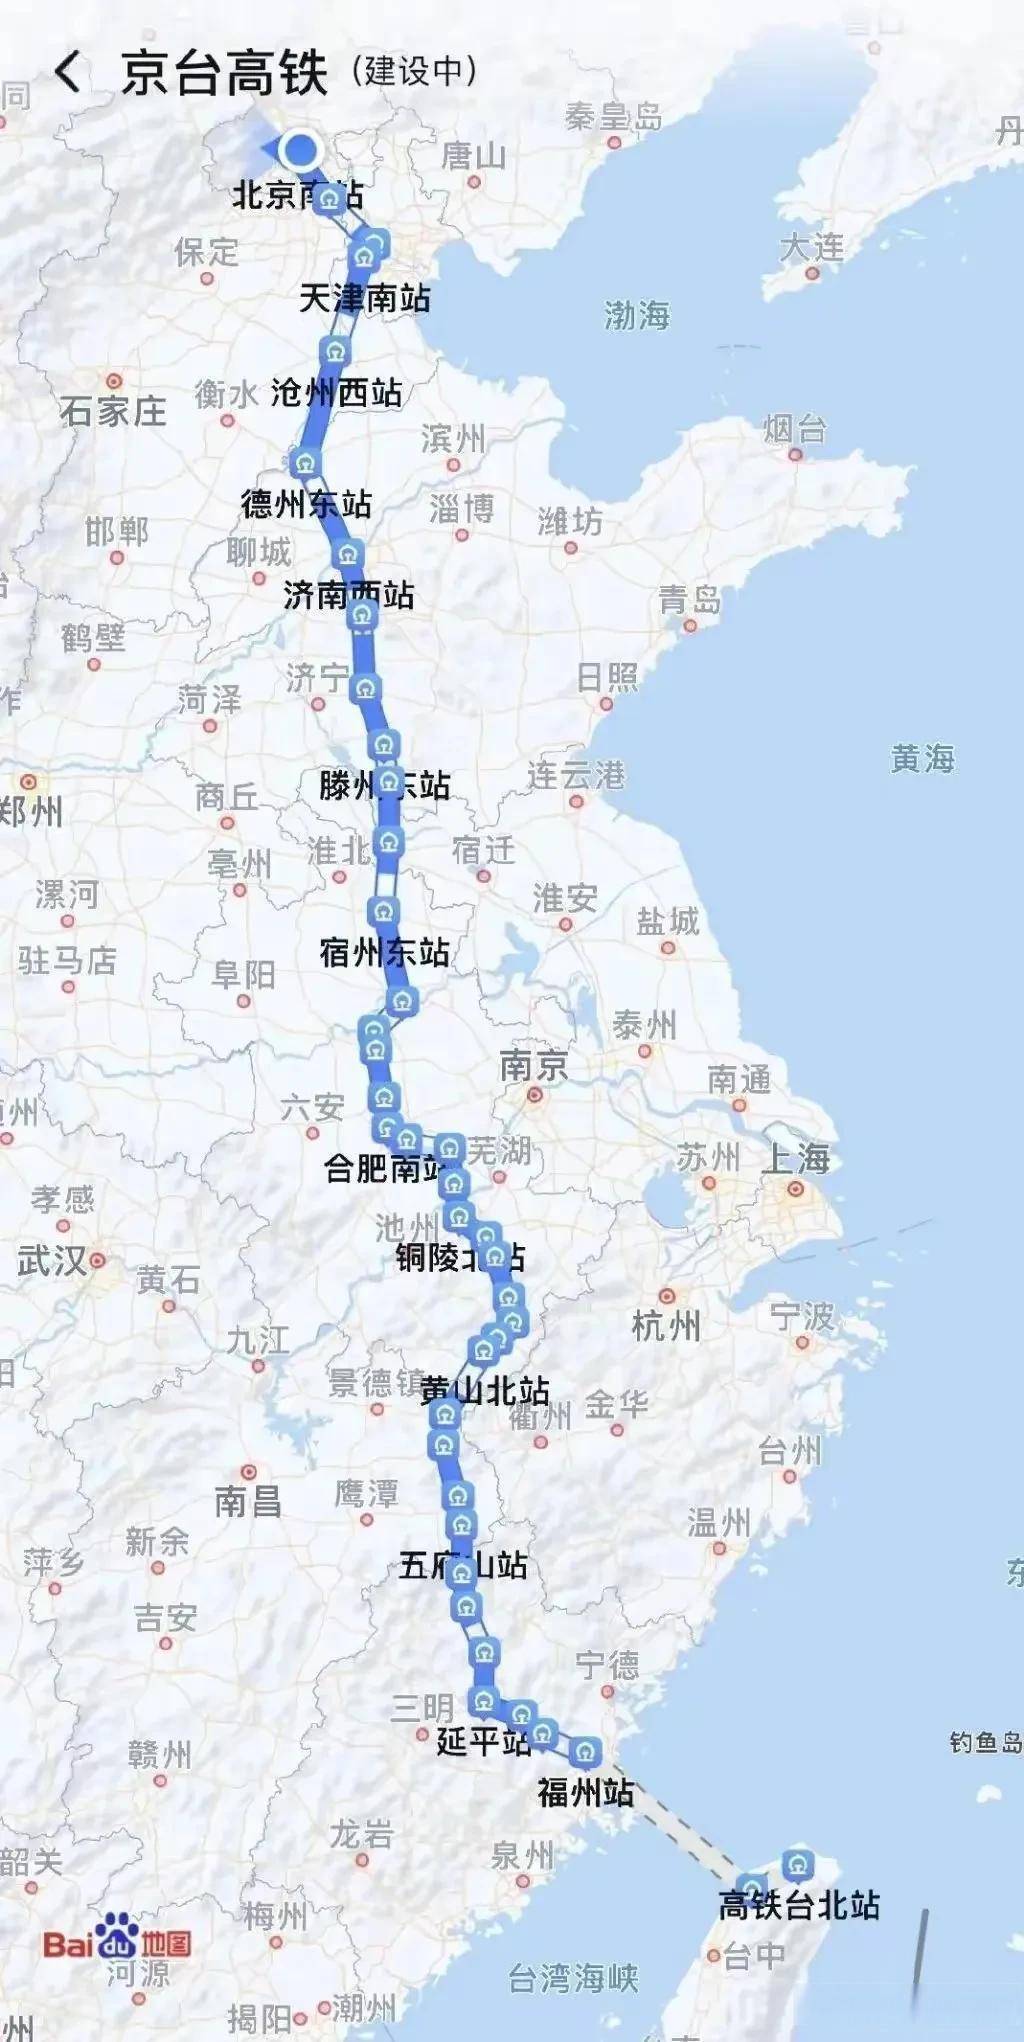 地图已显示“京台高铁”线路、台湾街道，2035台湾旅游提前攻略